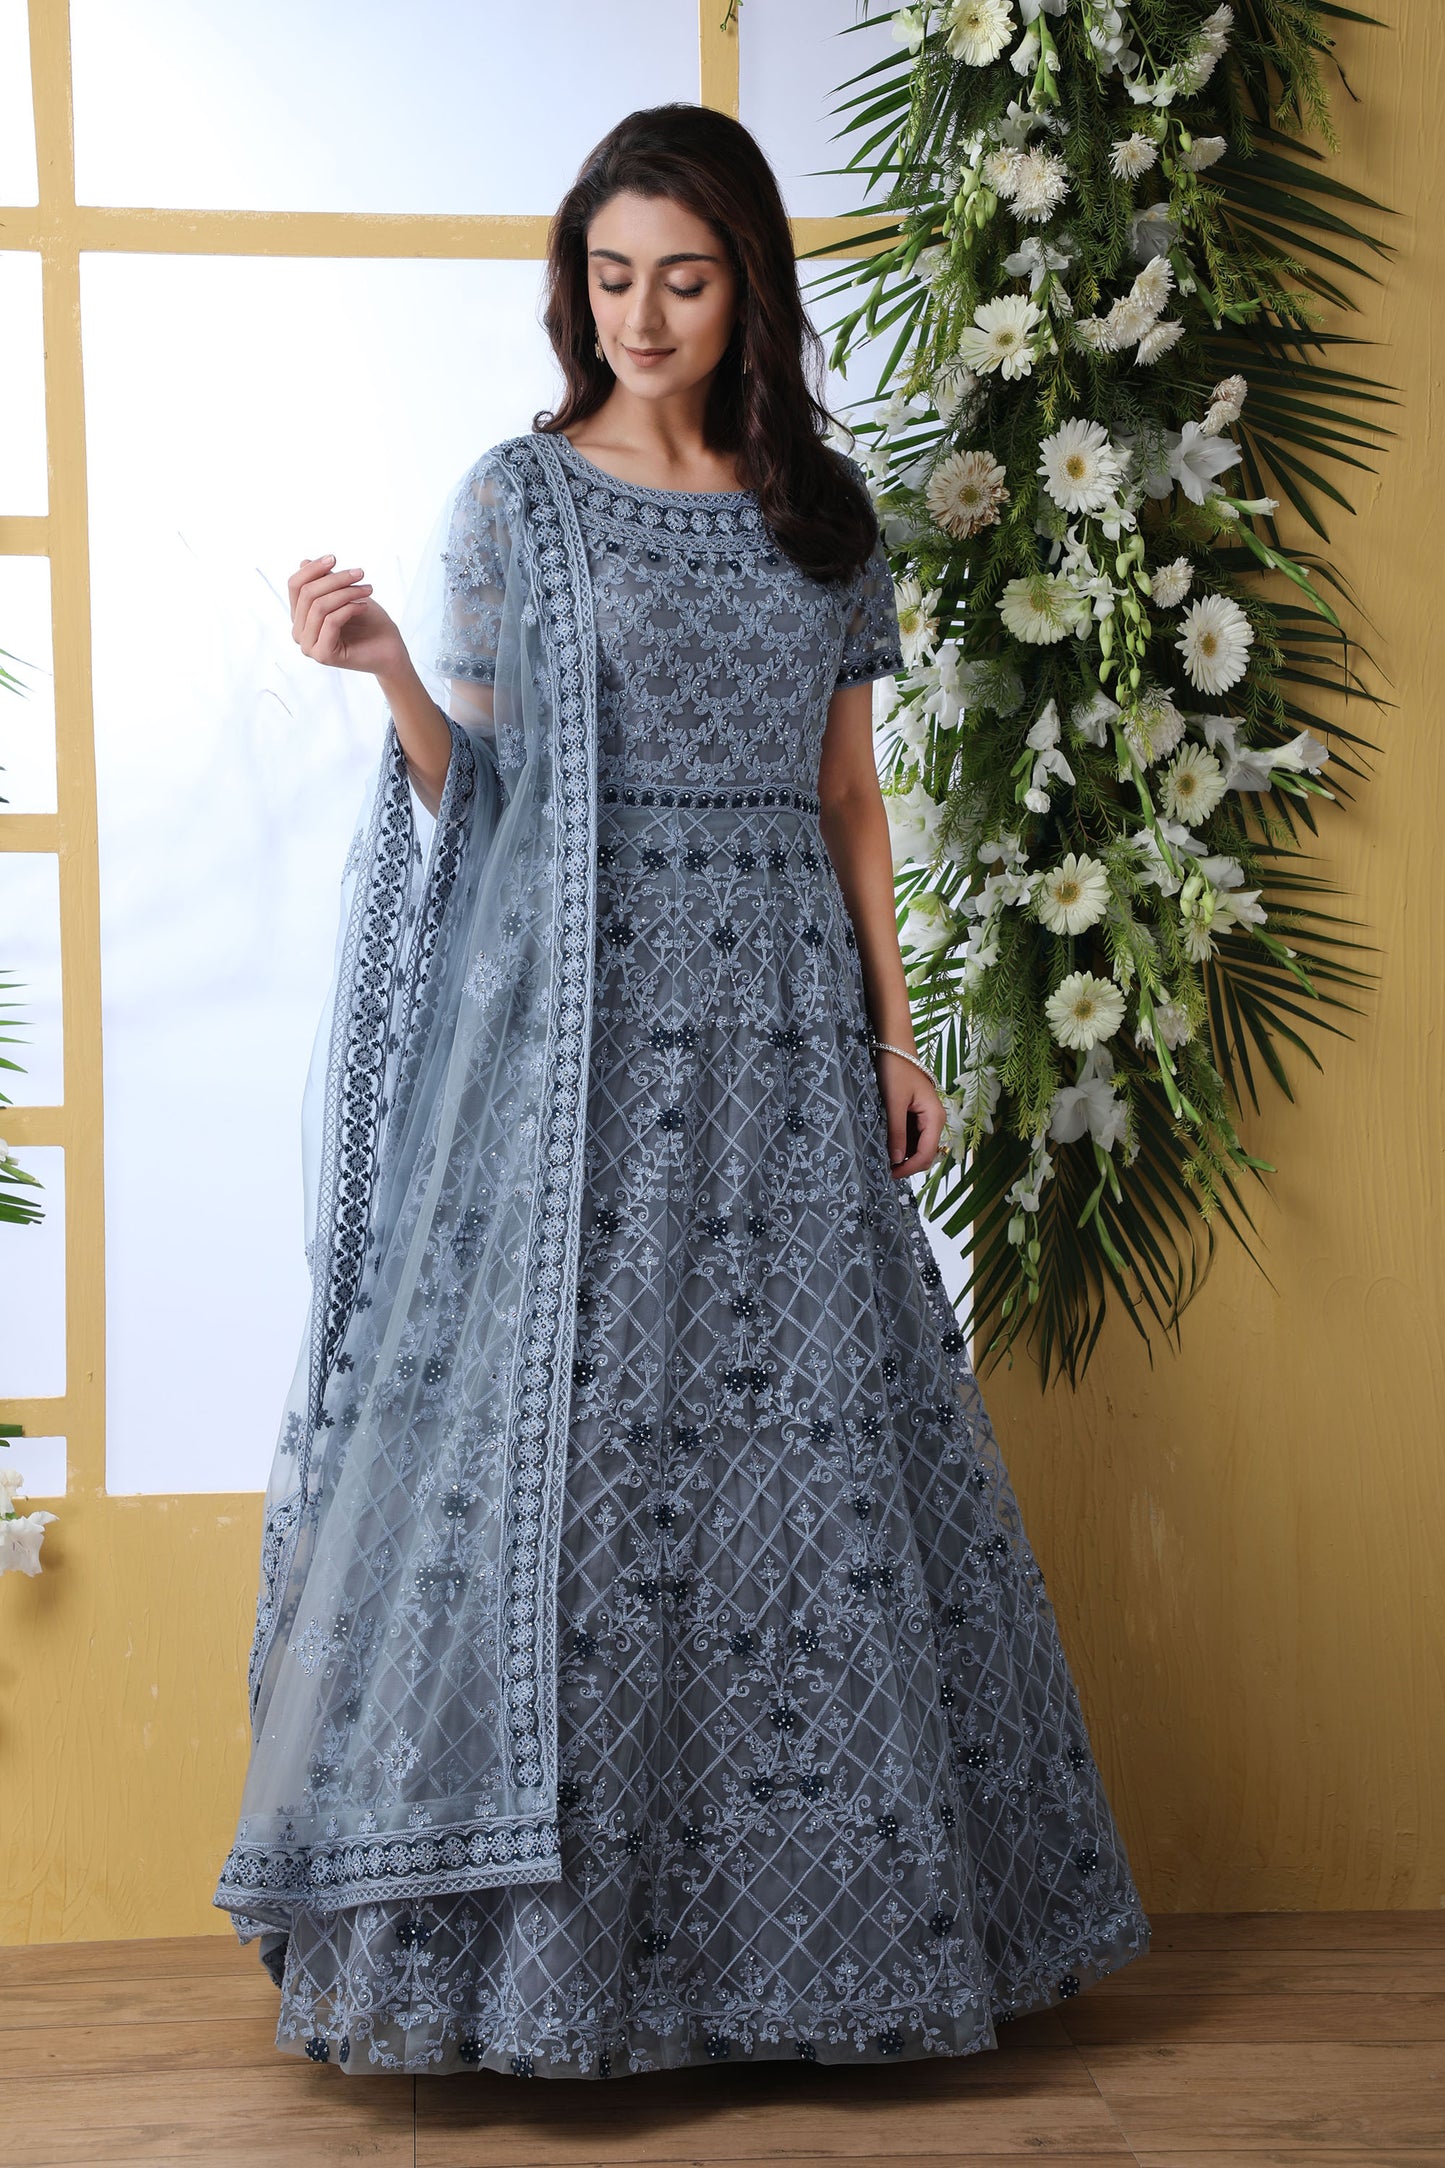 Marvelous Grey Color Net Anarkali for Sangeet